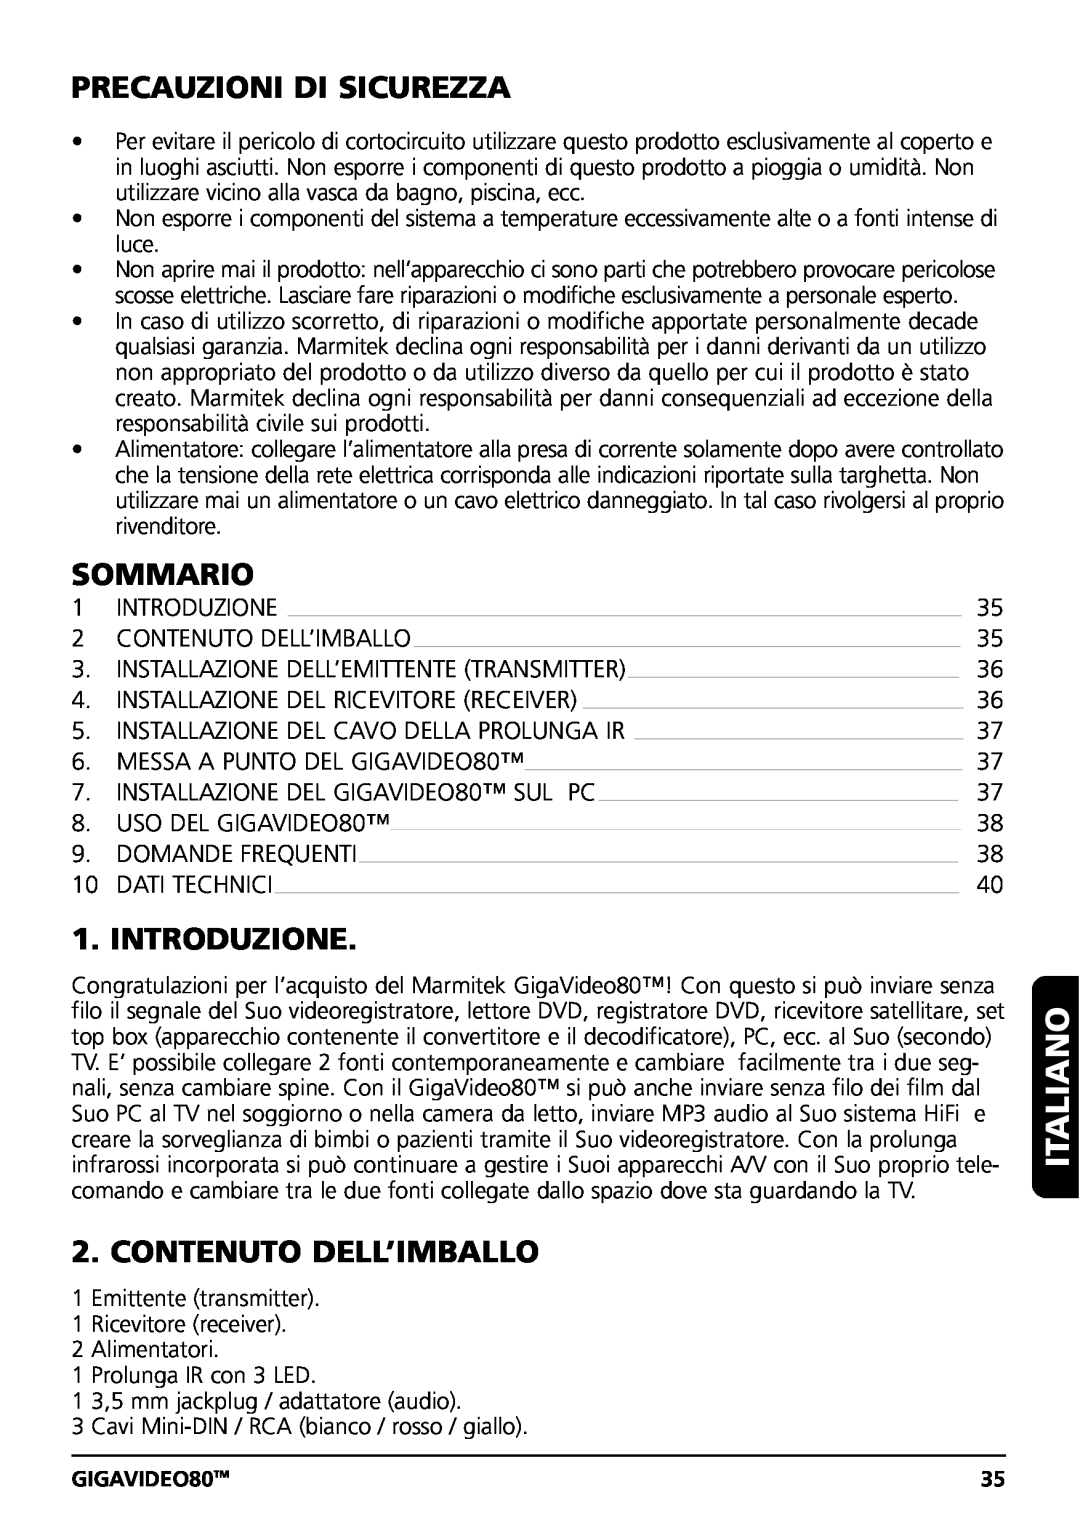 Marmitek GIGAVIDEO80 user manual Italiano, Precauzioni Di Sicurezza, Sommario, Introduzione, Contenuto Dell’Imballo 